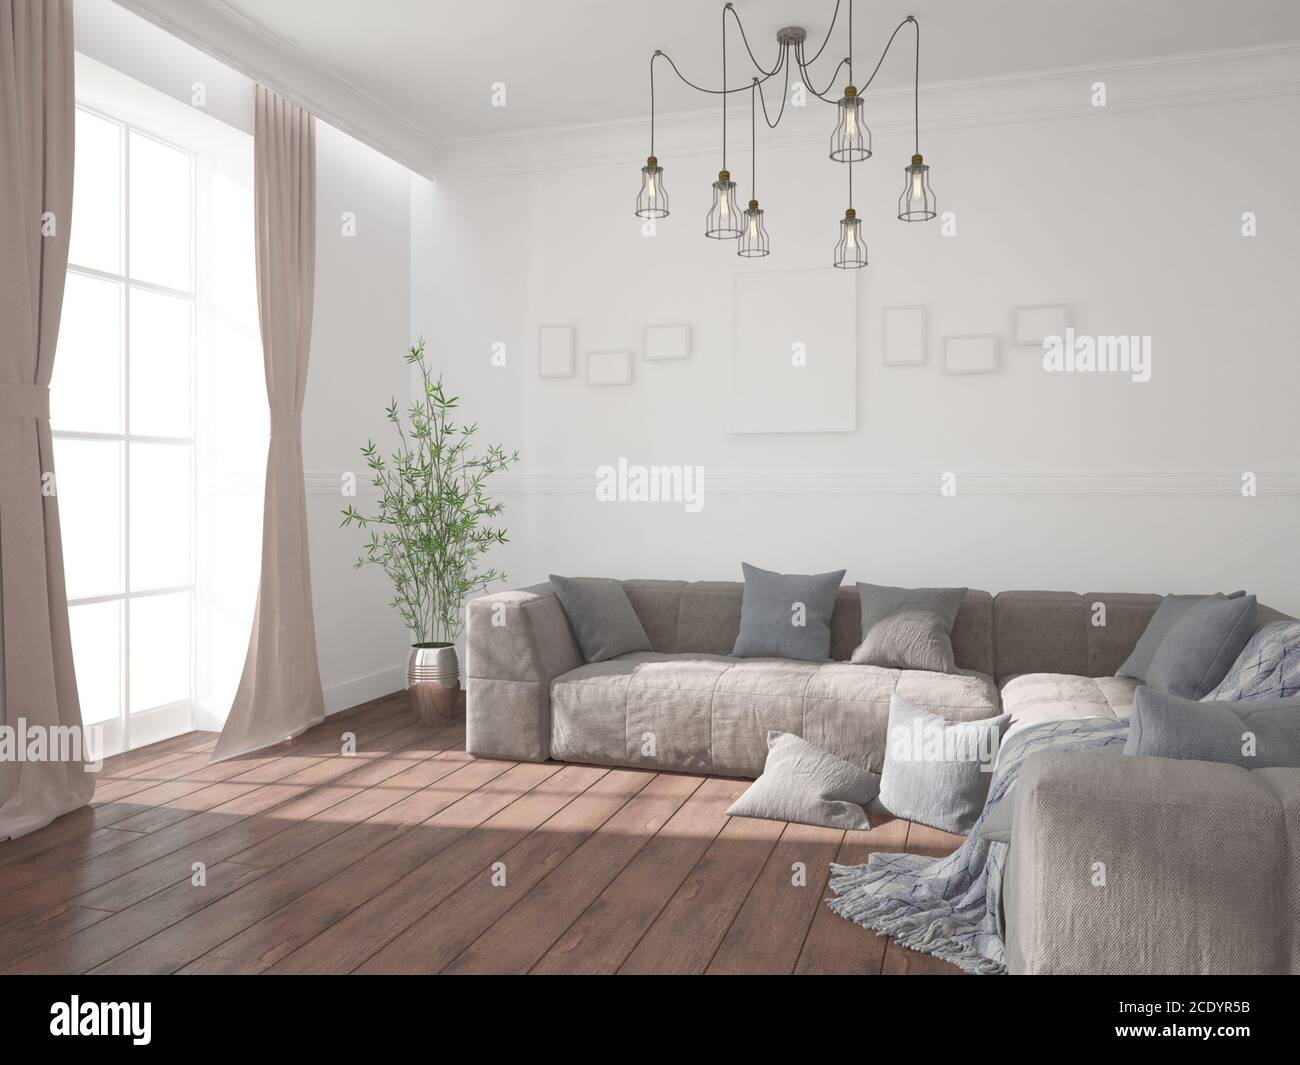 Modernes Zimmer mit Sofa, Lampe, Rahmen und Vorhänge Innendesign. 3D-Illustration Stockfoto